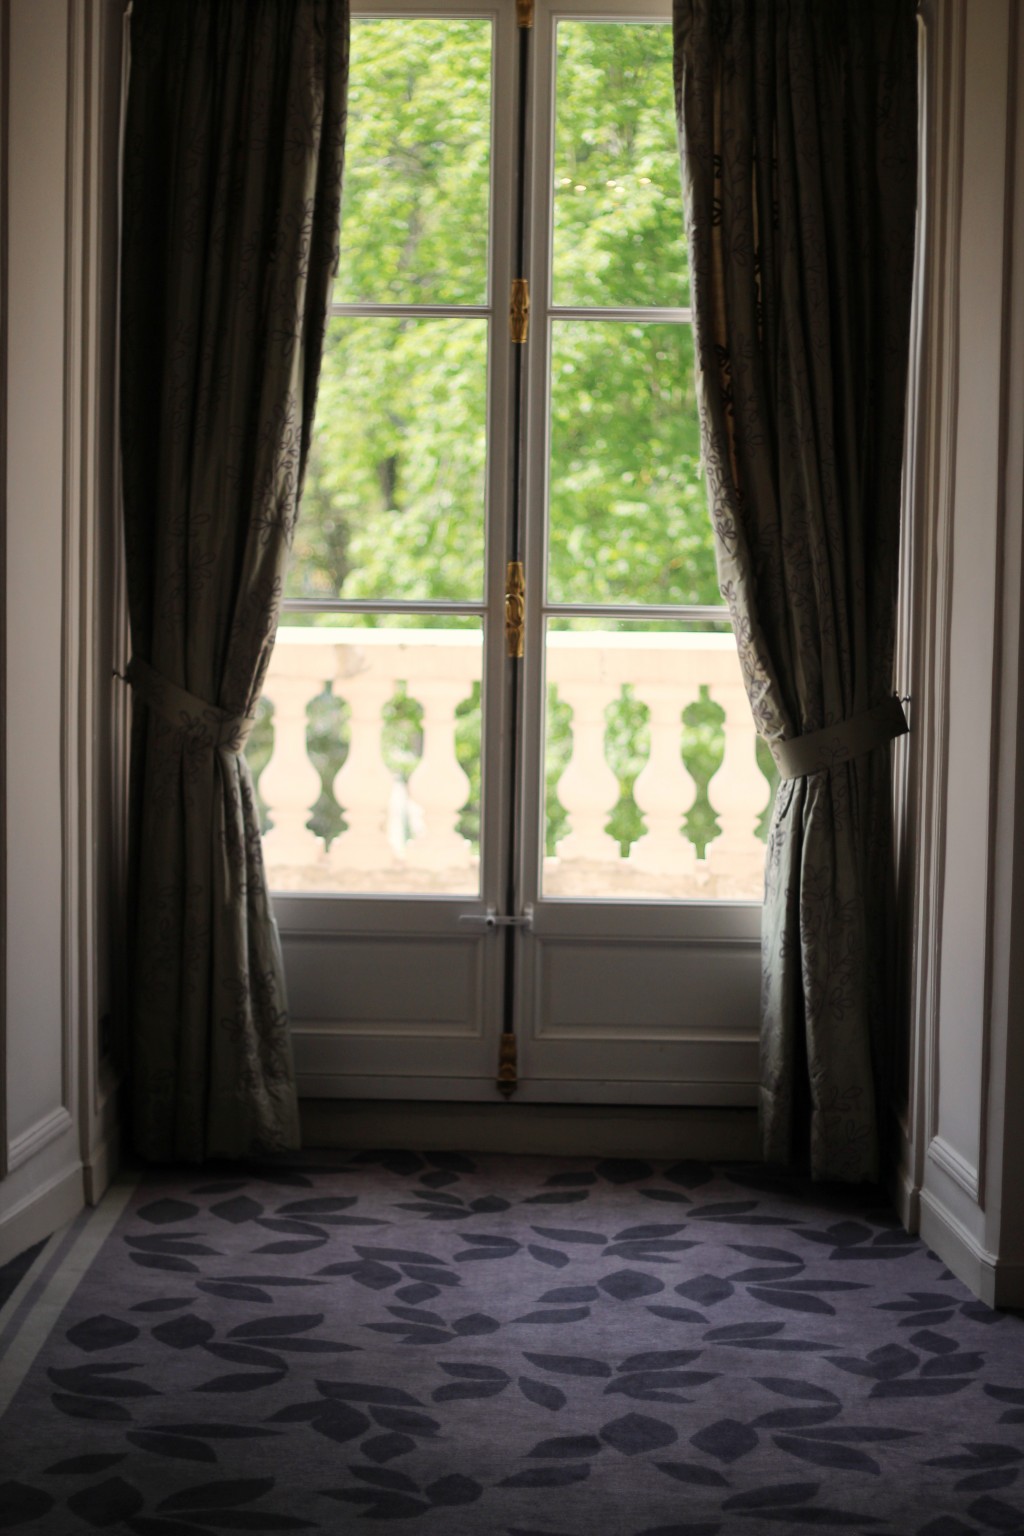 Trianon Versailles (c) upupup.fr